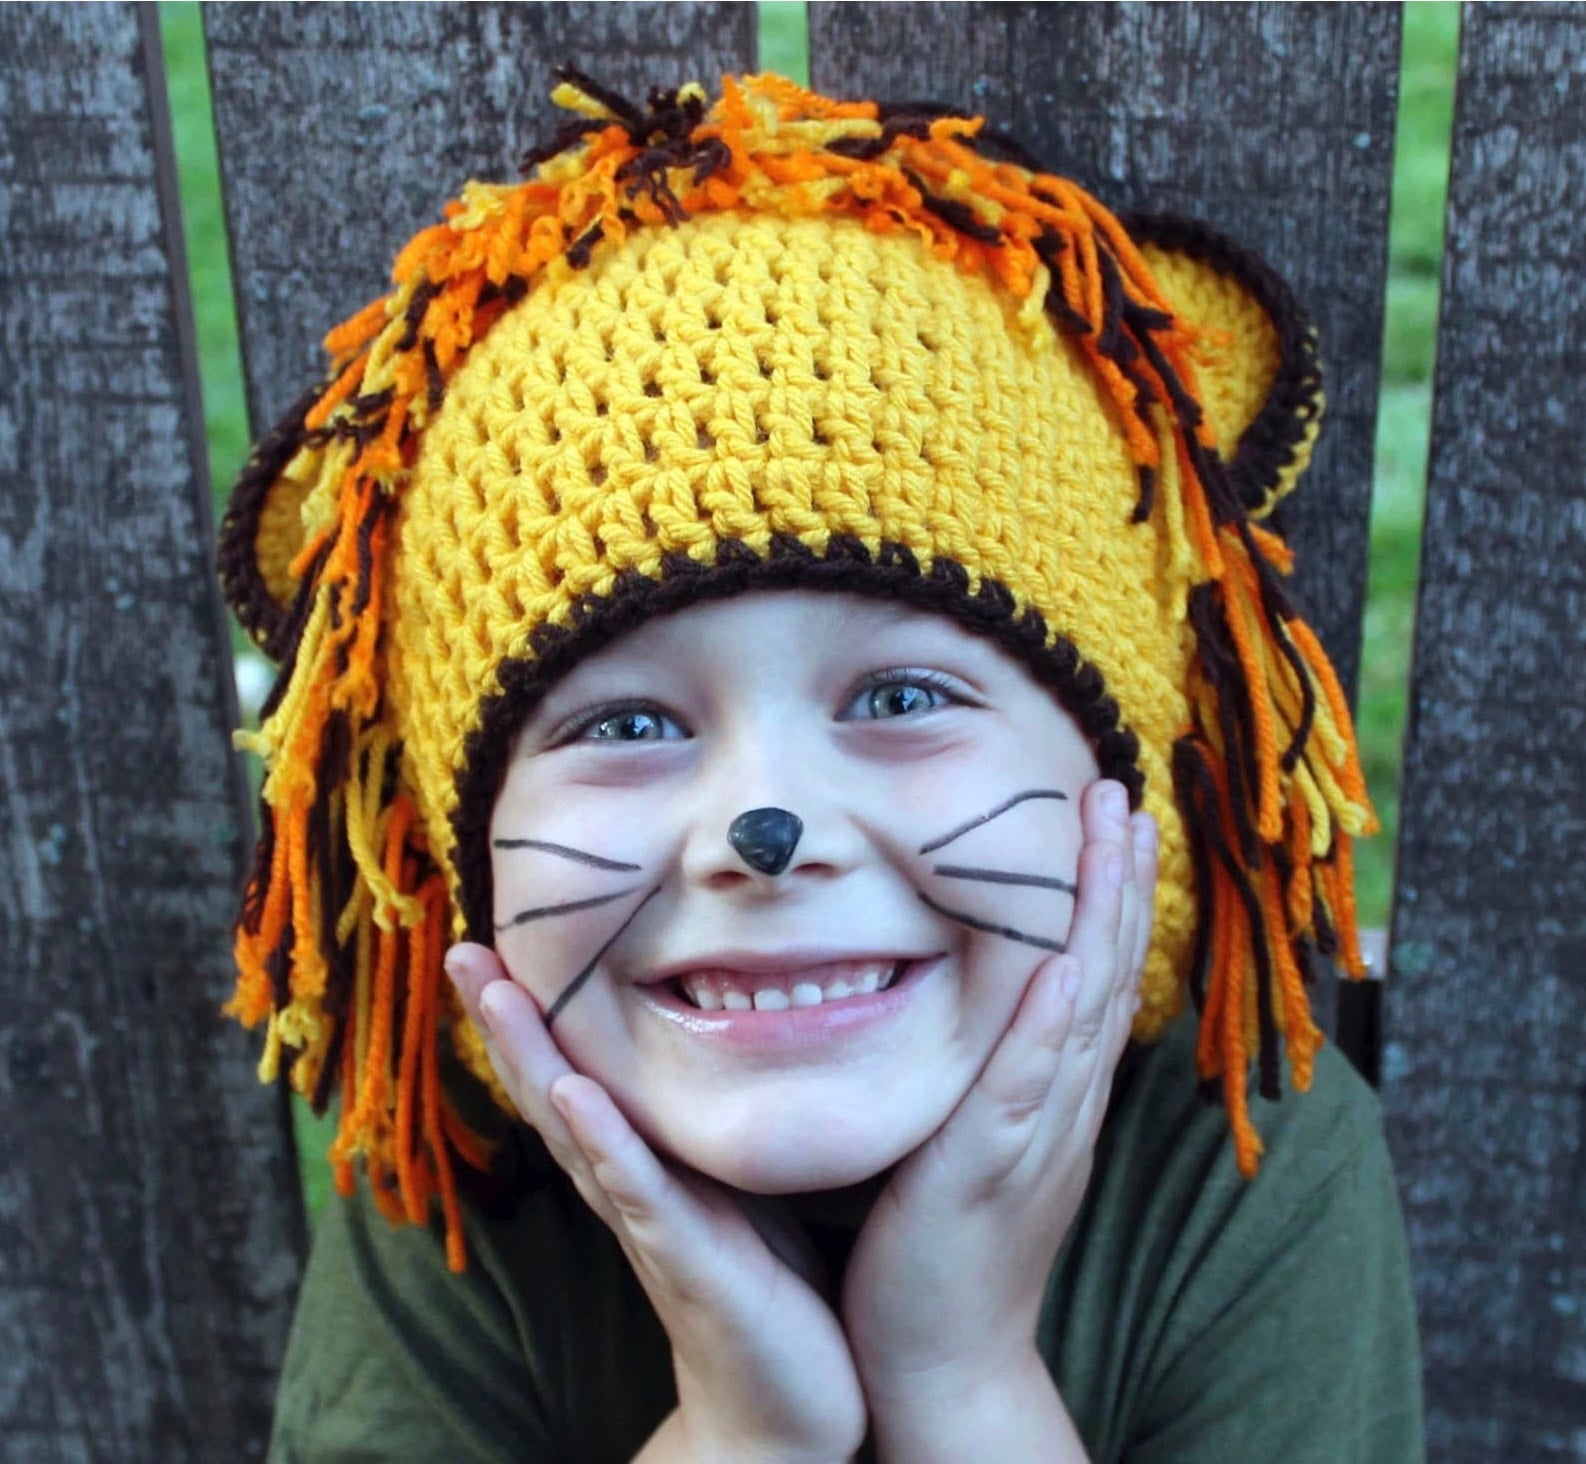 crochet lion king hat